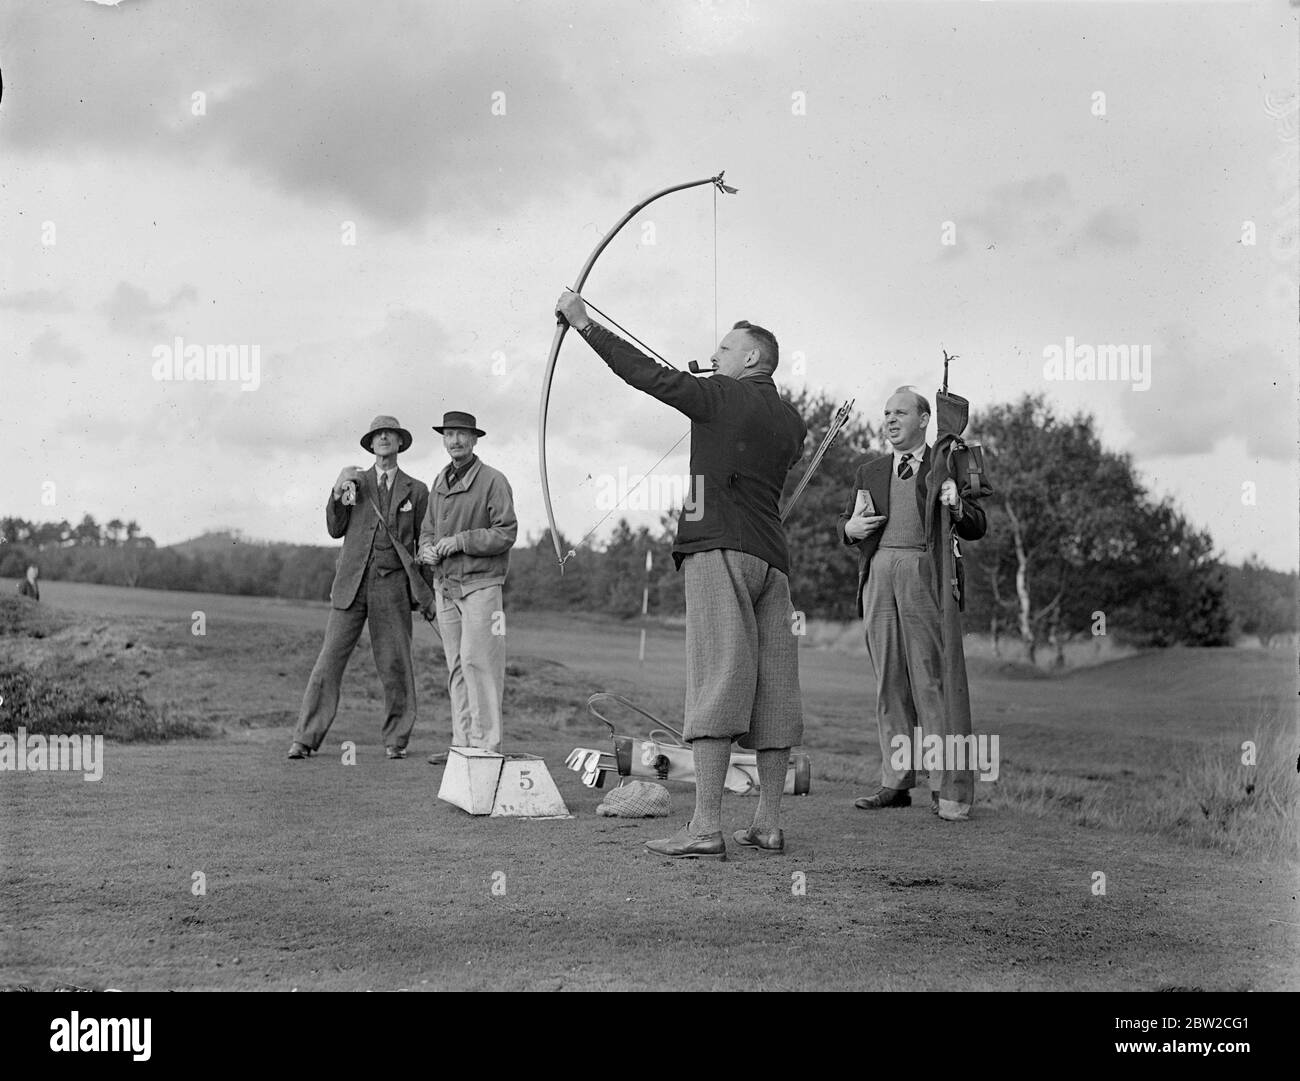 Jouant avec Bow et Arrow, le major J G Hayter, expert reconnu dans le sport annuel du golf Bow et Arrow, a rencontré le colonel E St George Kirke, le capitaine du club, dans un match au Hankley Common Golf Club, Surrey. Il a concédé un coup un gale.le major Hayter tire sa flèche dans une boîte au lieu d'un trou.sa moyenne pour la plupart des cours de Surrey est dans les années 70. Photos : le Major J G Hayter photographie une flèche. 18 octobre 1938 Banque D'Images